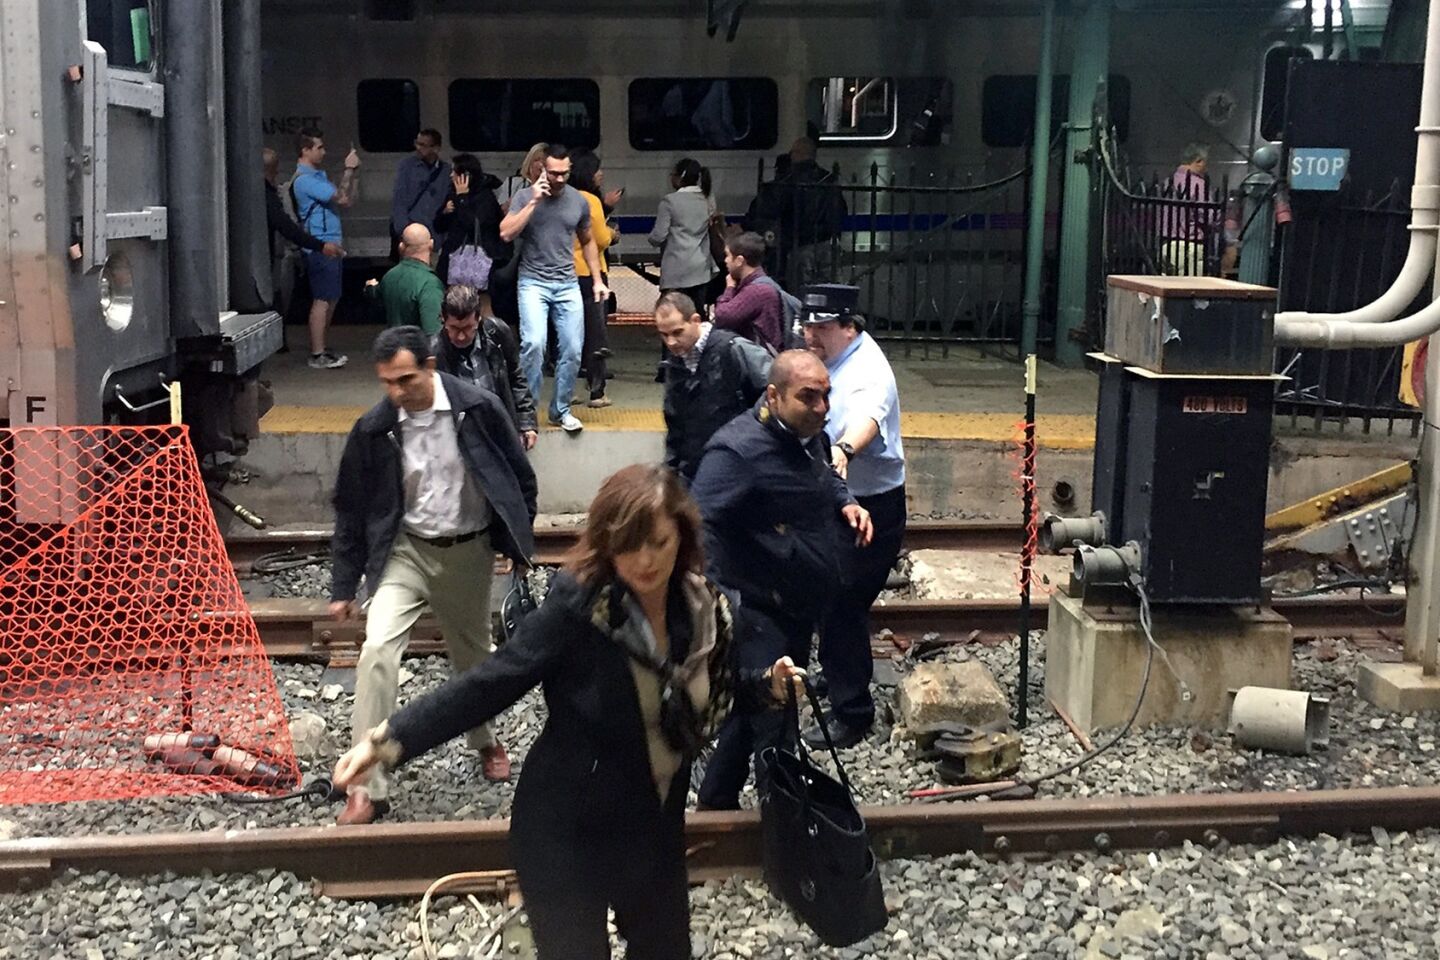 NJ Transit train crash in Hoboken